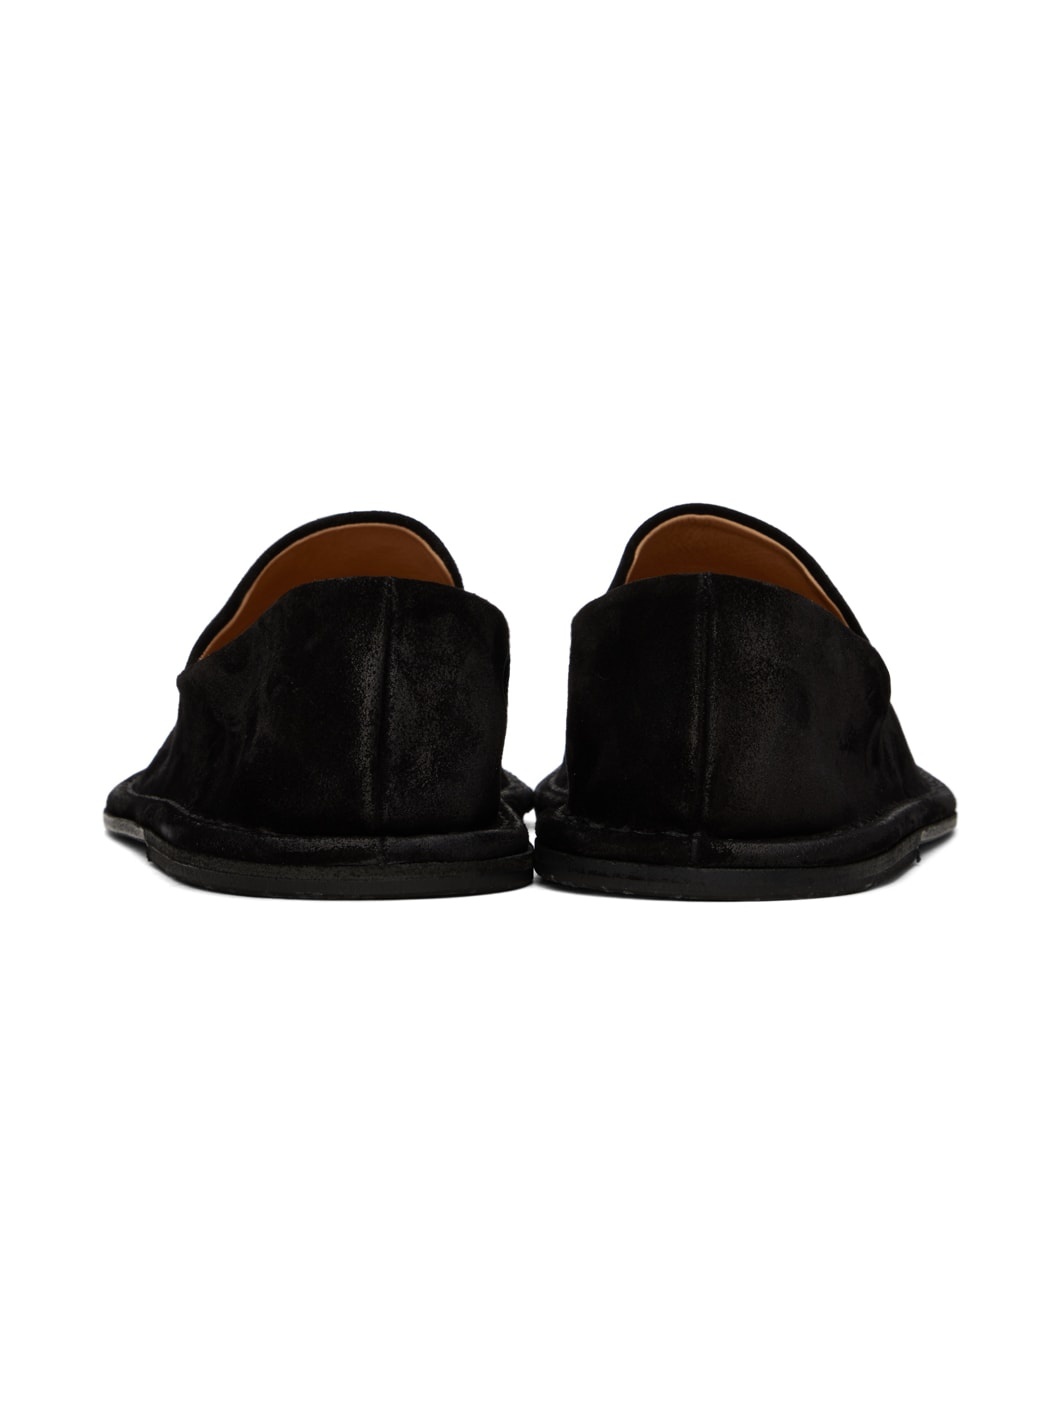 Black Filo Loafers - 2